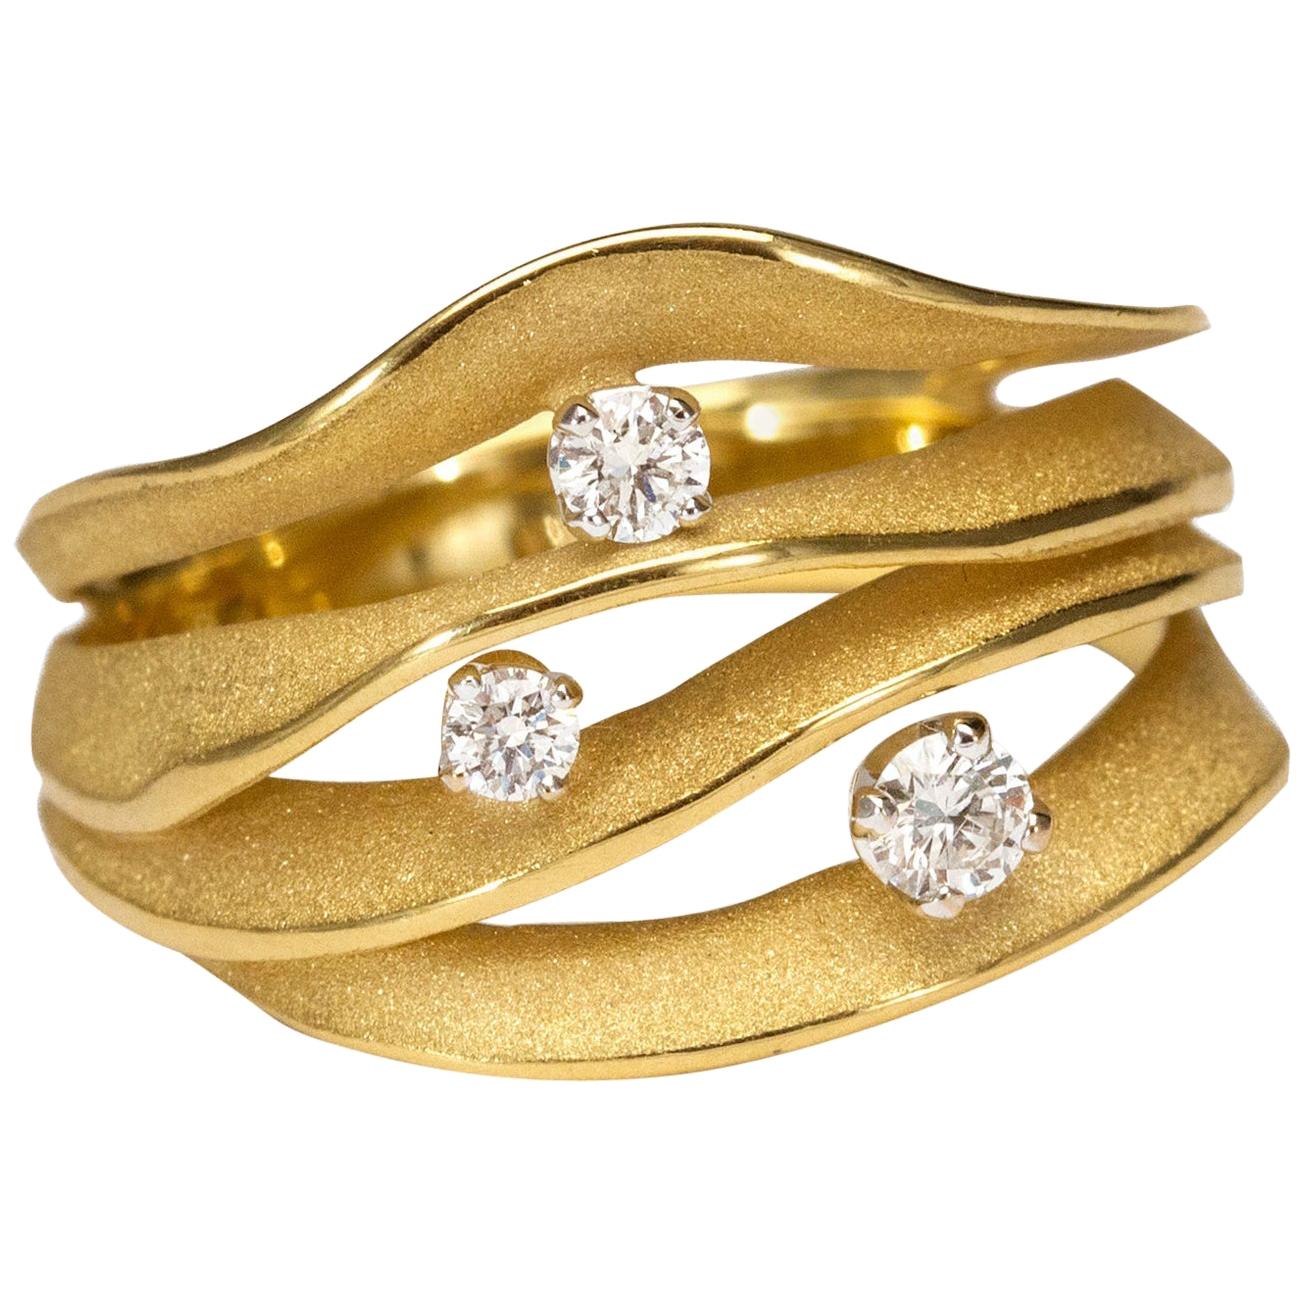 Annamaria Cammilli Bague "Dune Royal" en or jaune 18 carats et diamants avec lever de soleil